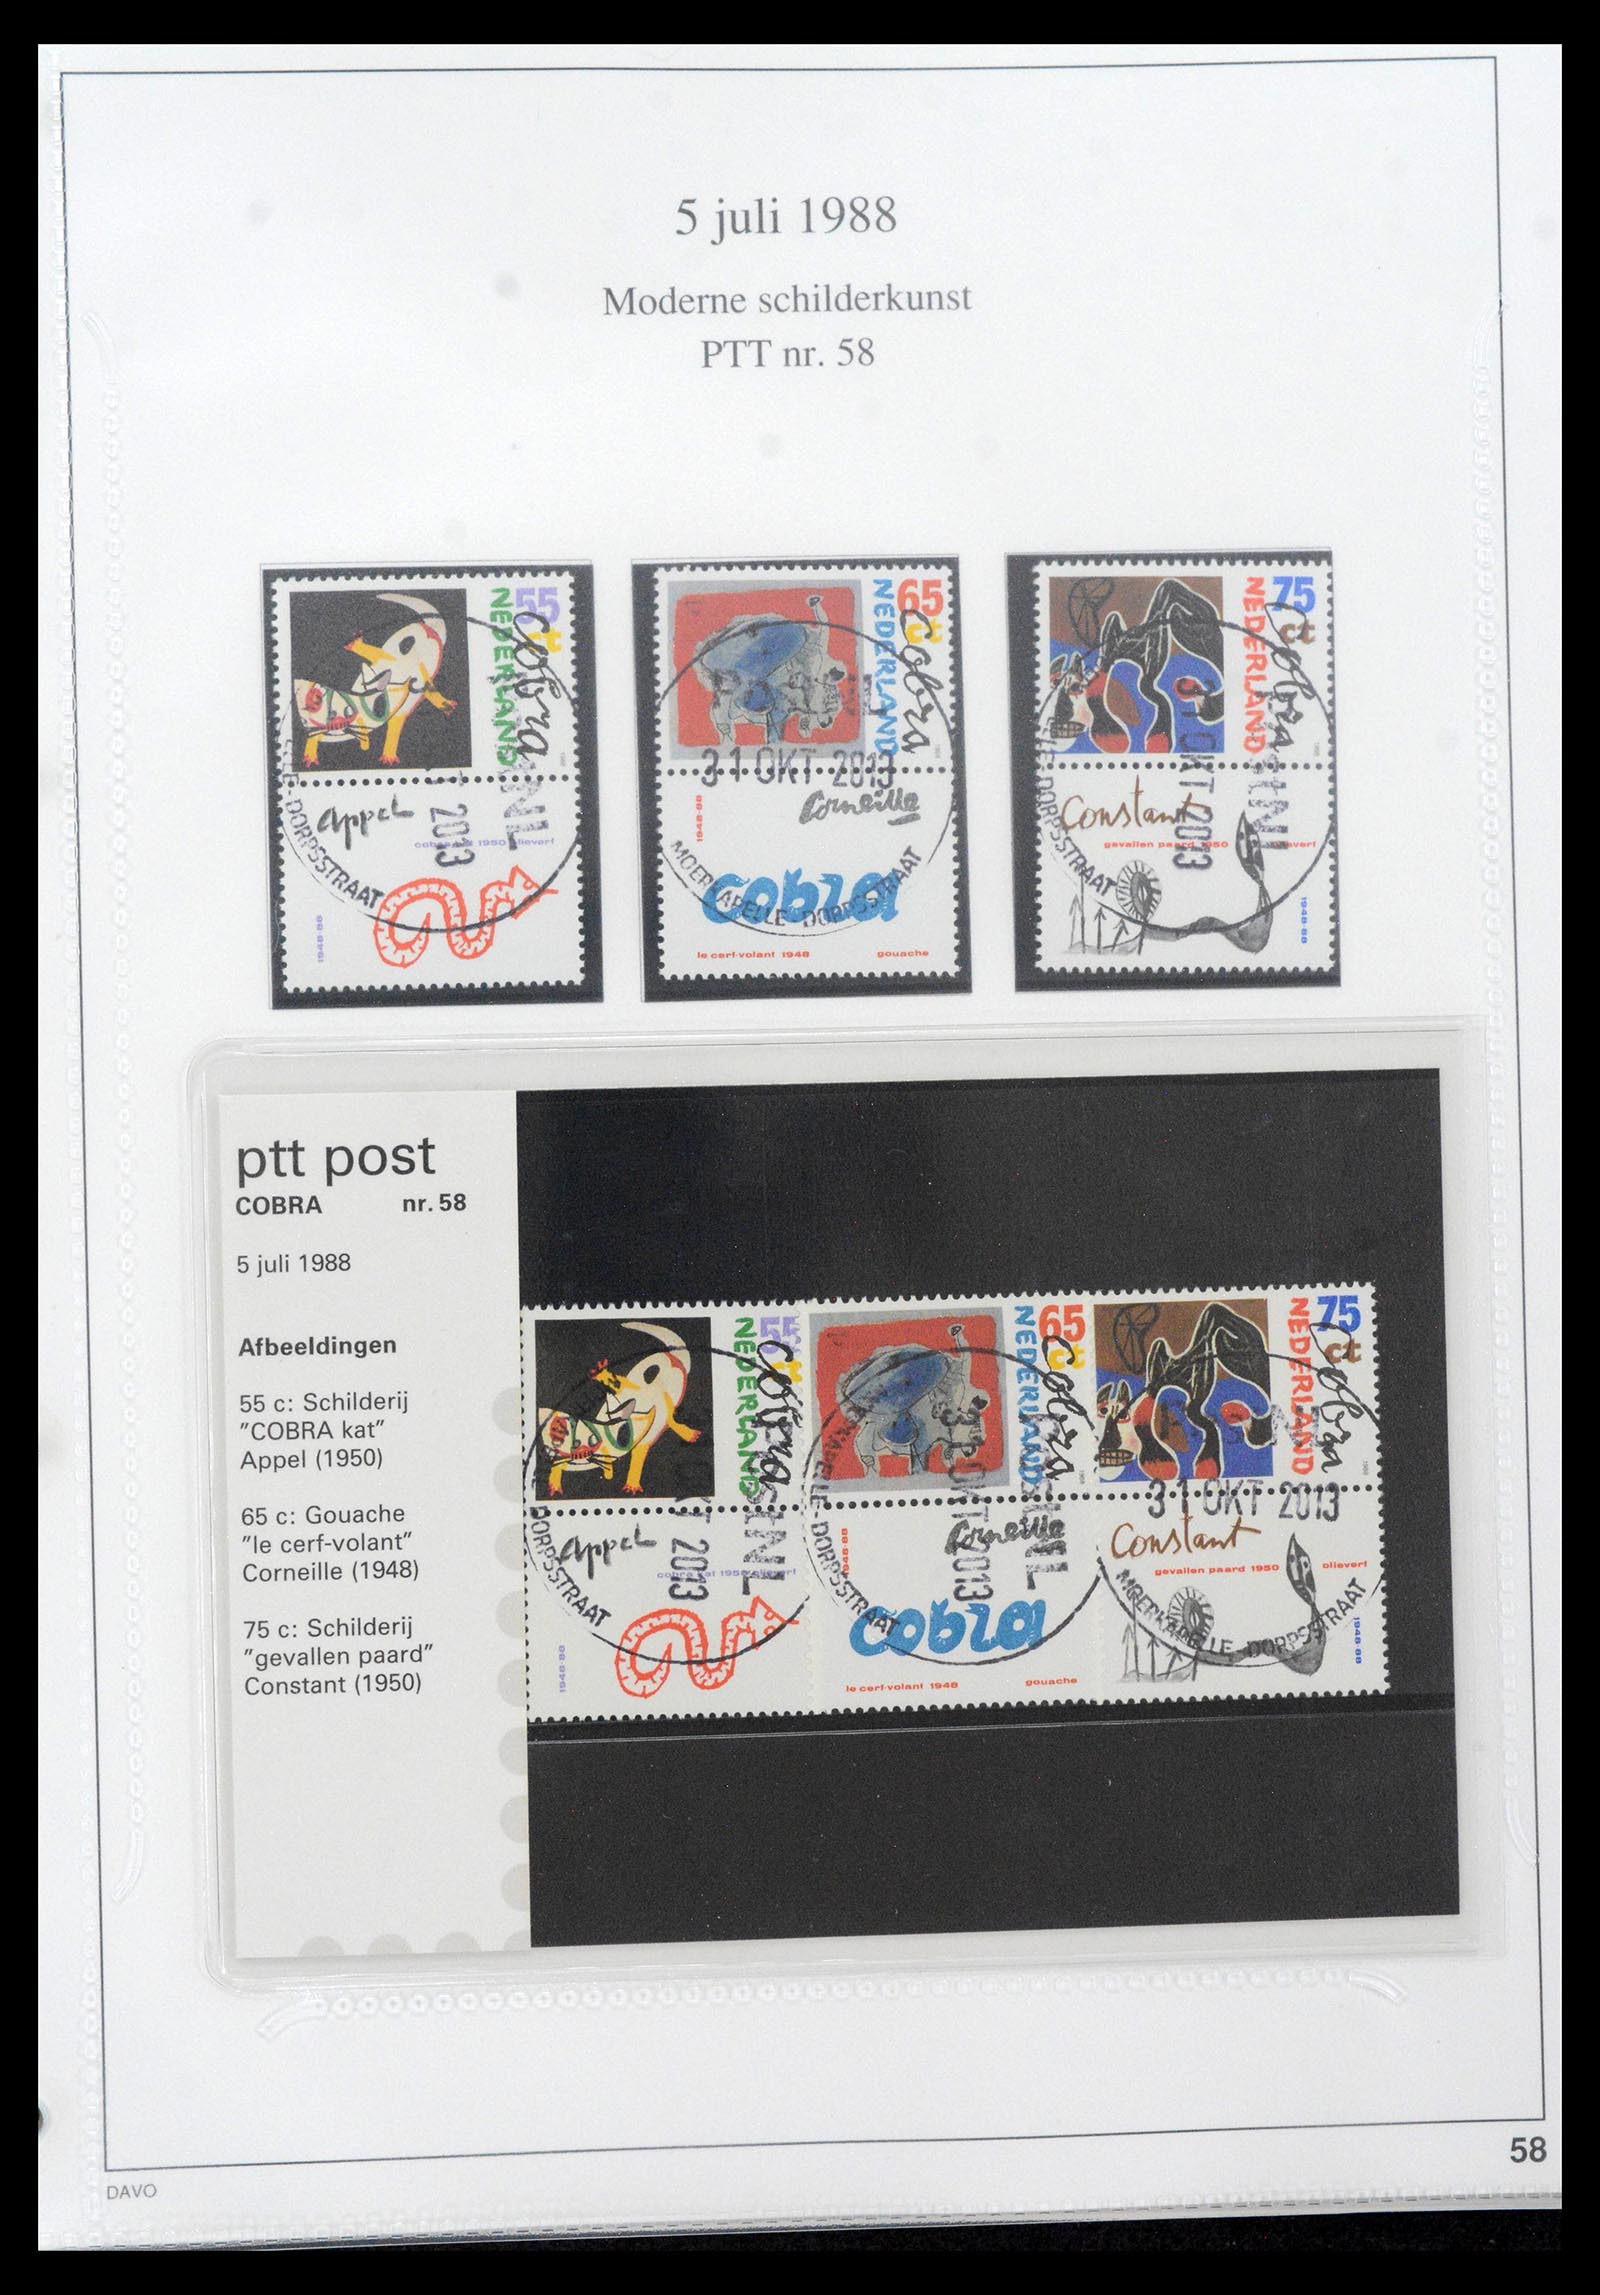 39121 0058 - Stamp collection 39121 Netherlands presentationpacks 1982-2001.